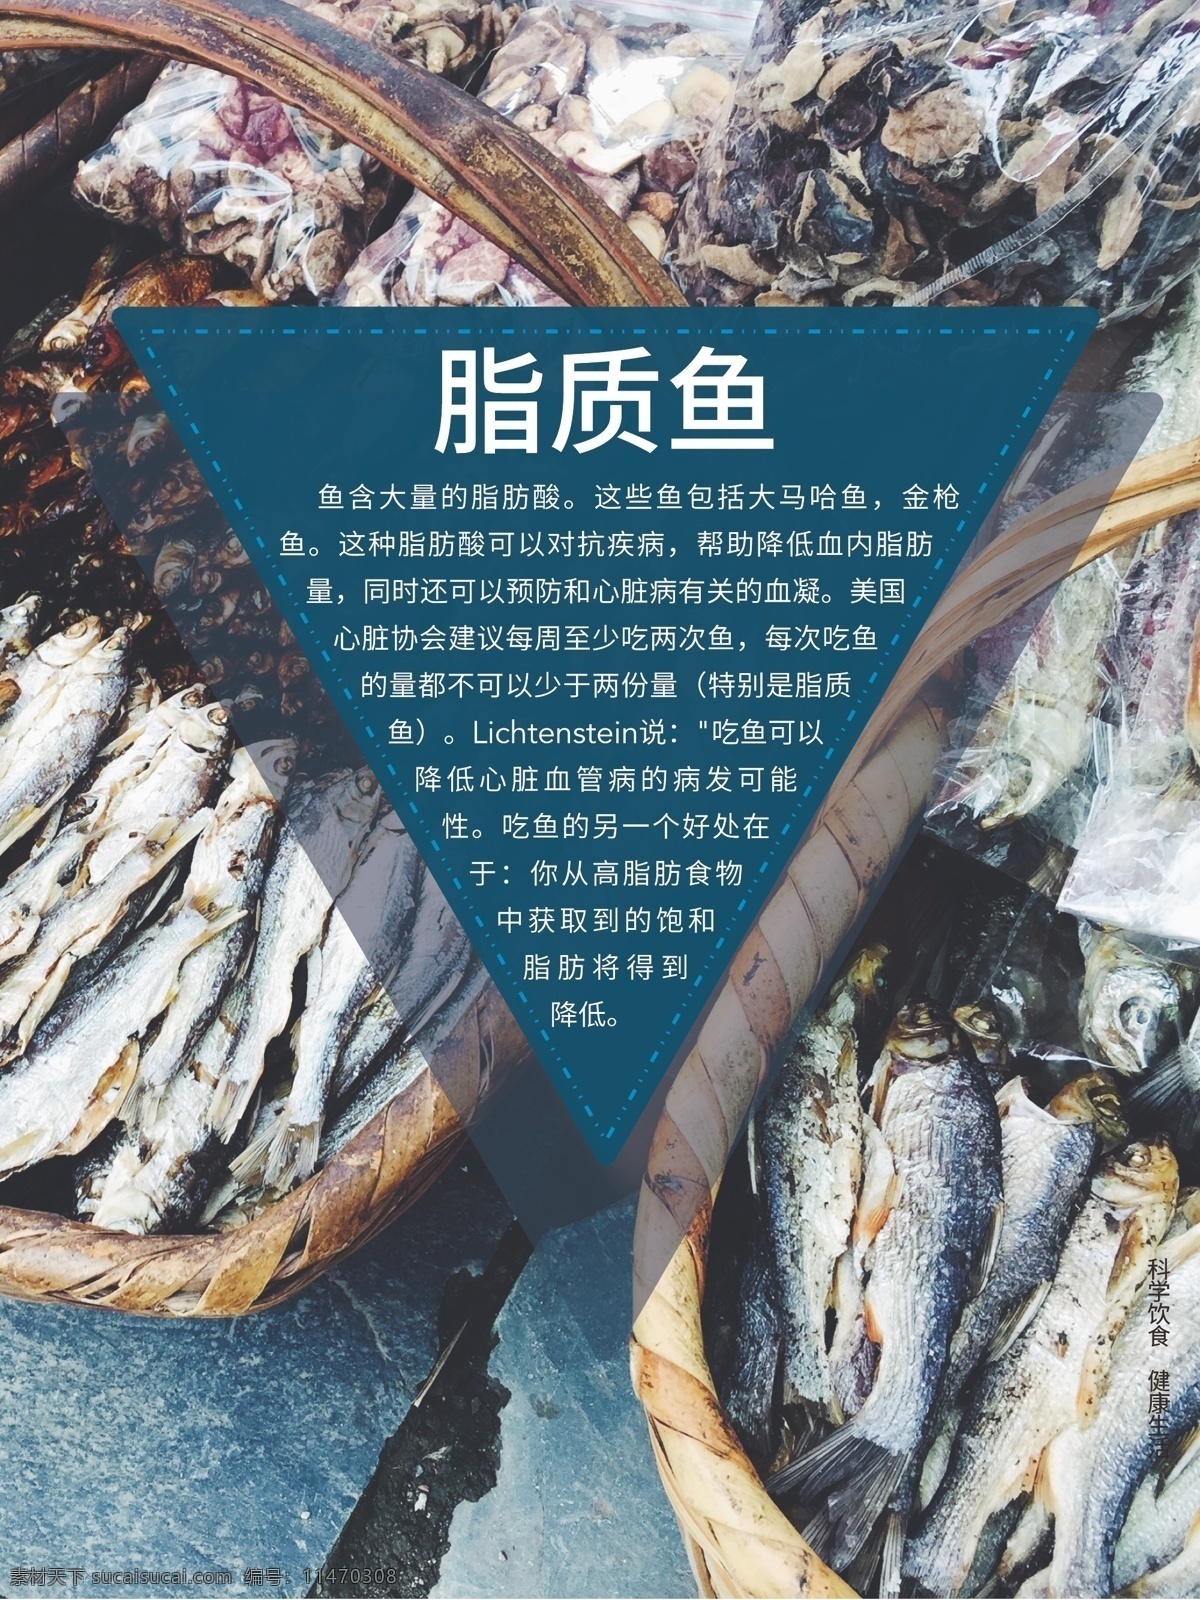 脂质鱼 深海鱼 生鲜 超市 餐厅 文化 展板 招贴设计